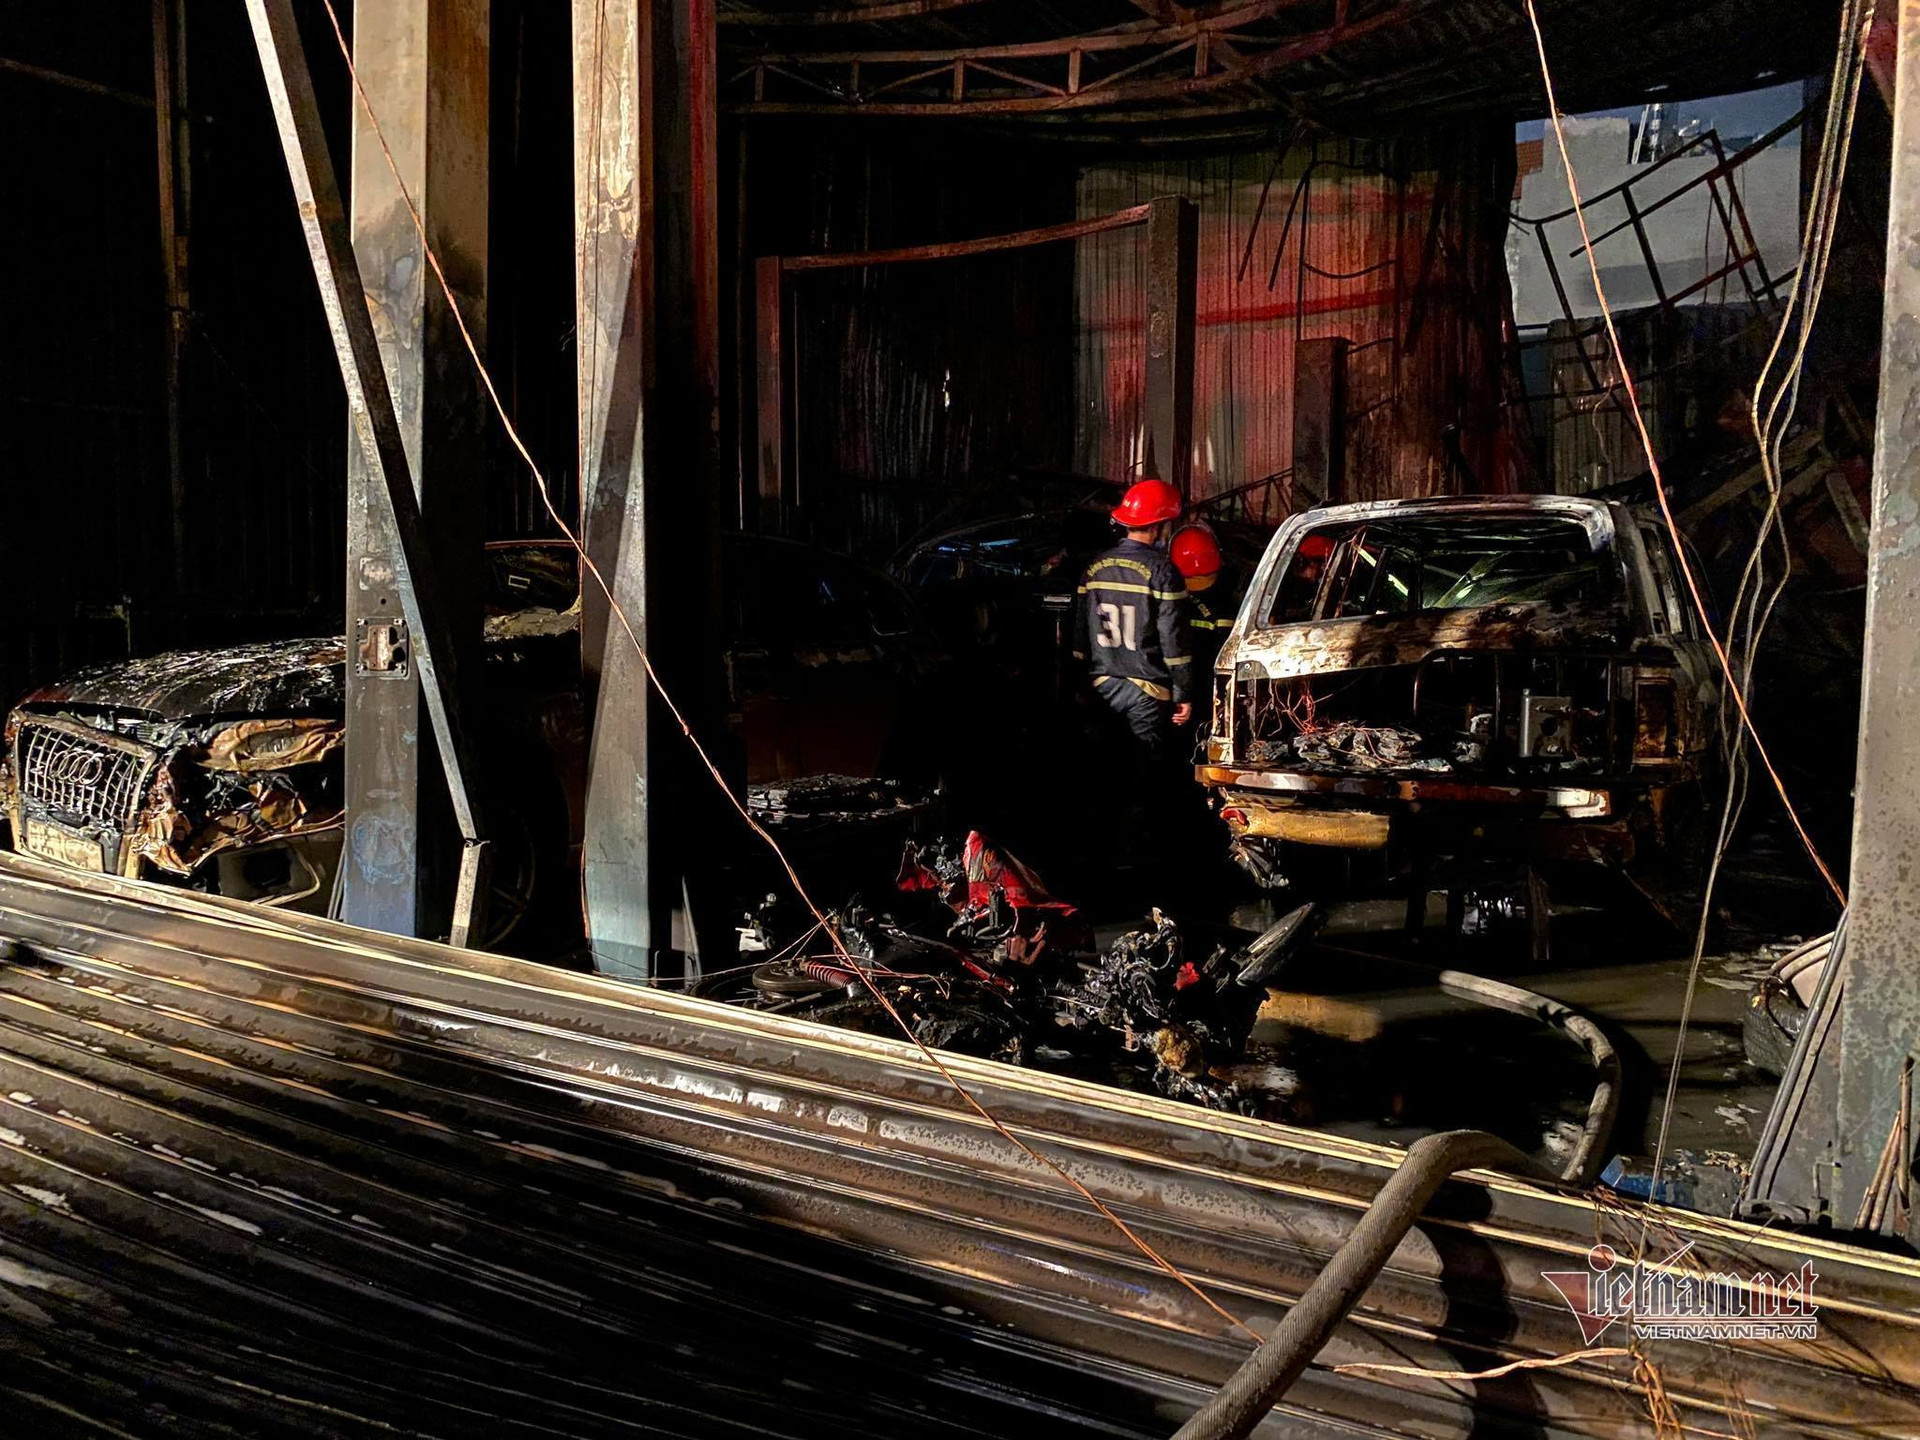 Cháy lớn thiêu rụi 3 ô tô ở gara quận 7, cảnh sát tông sập cửa dập lửa